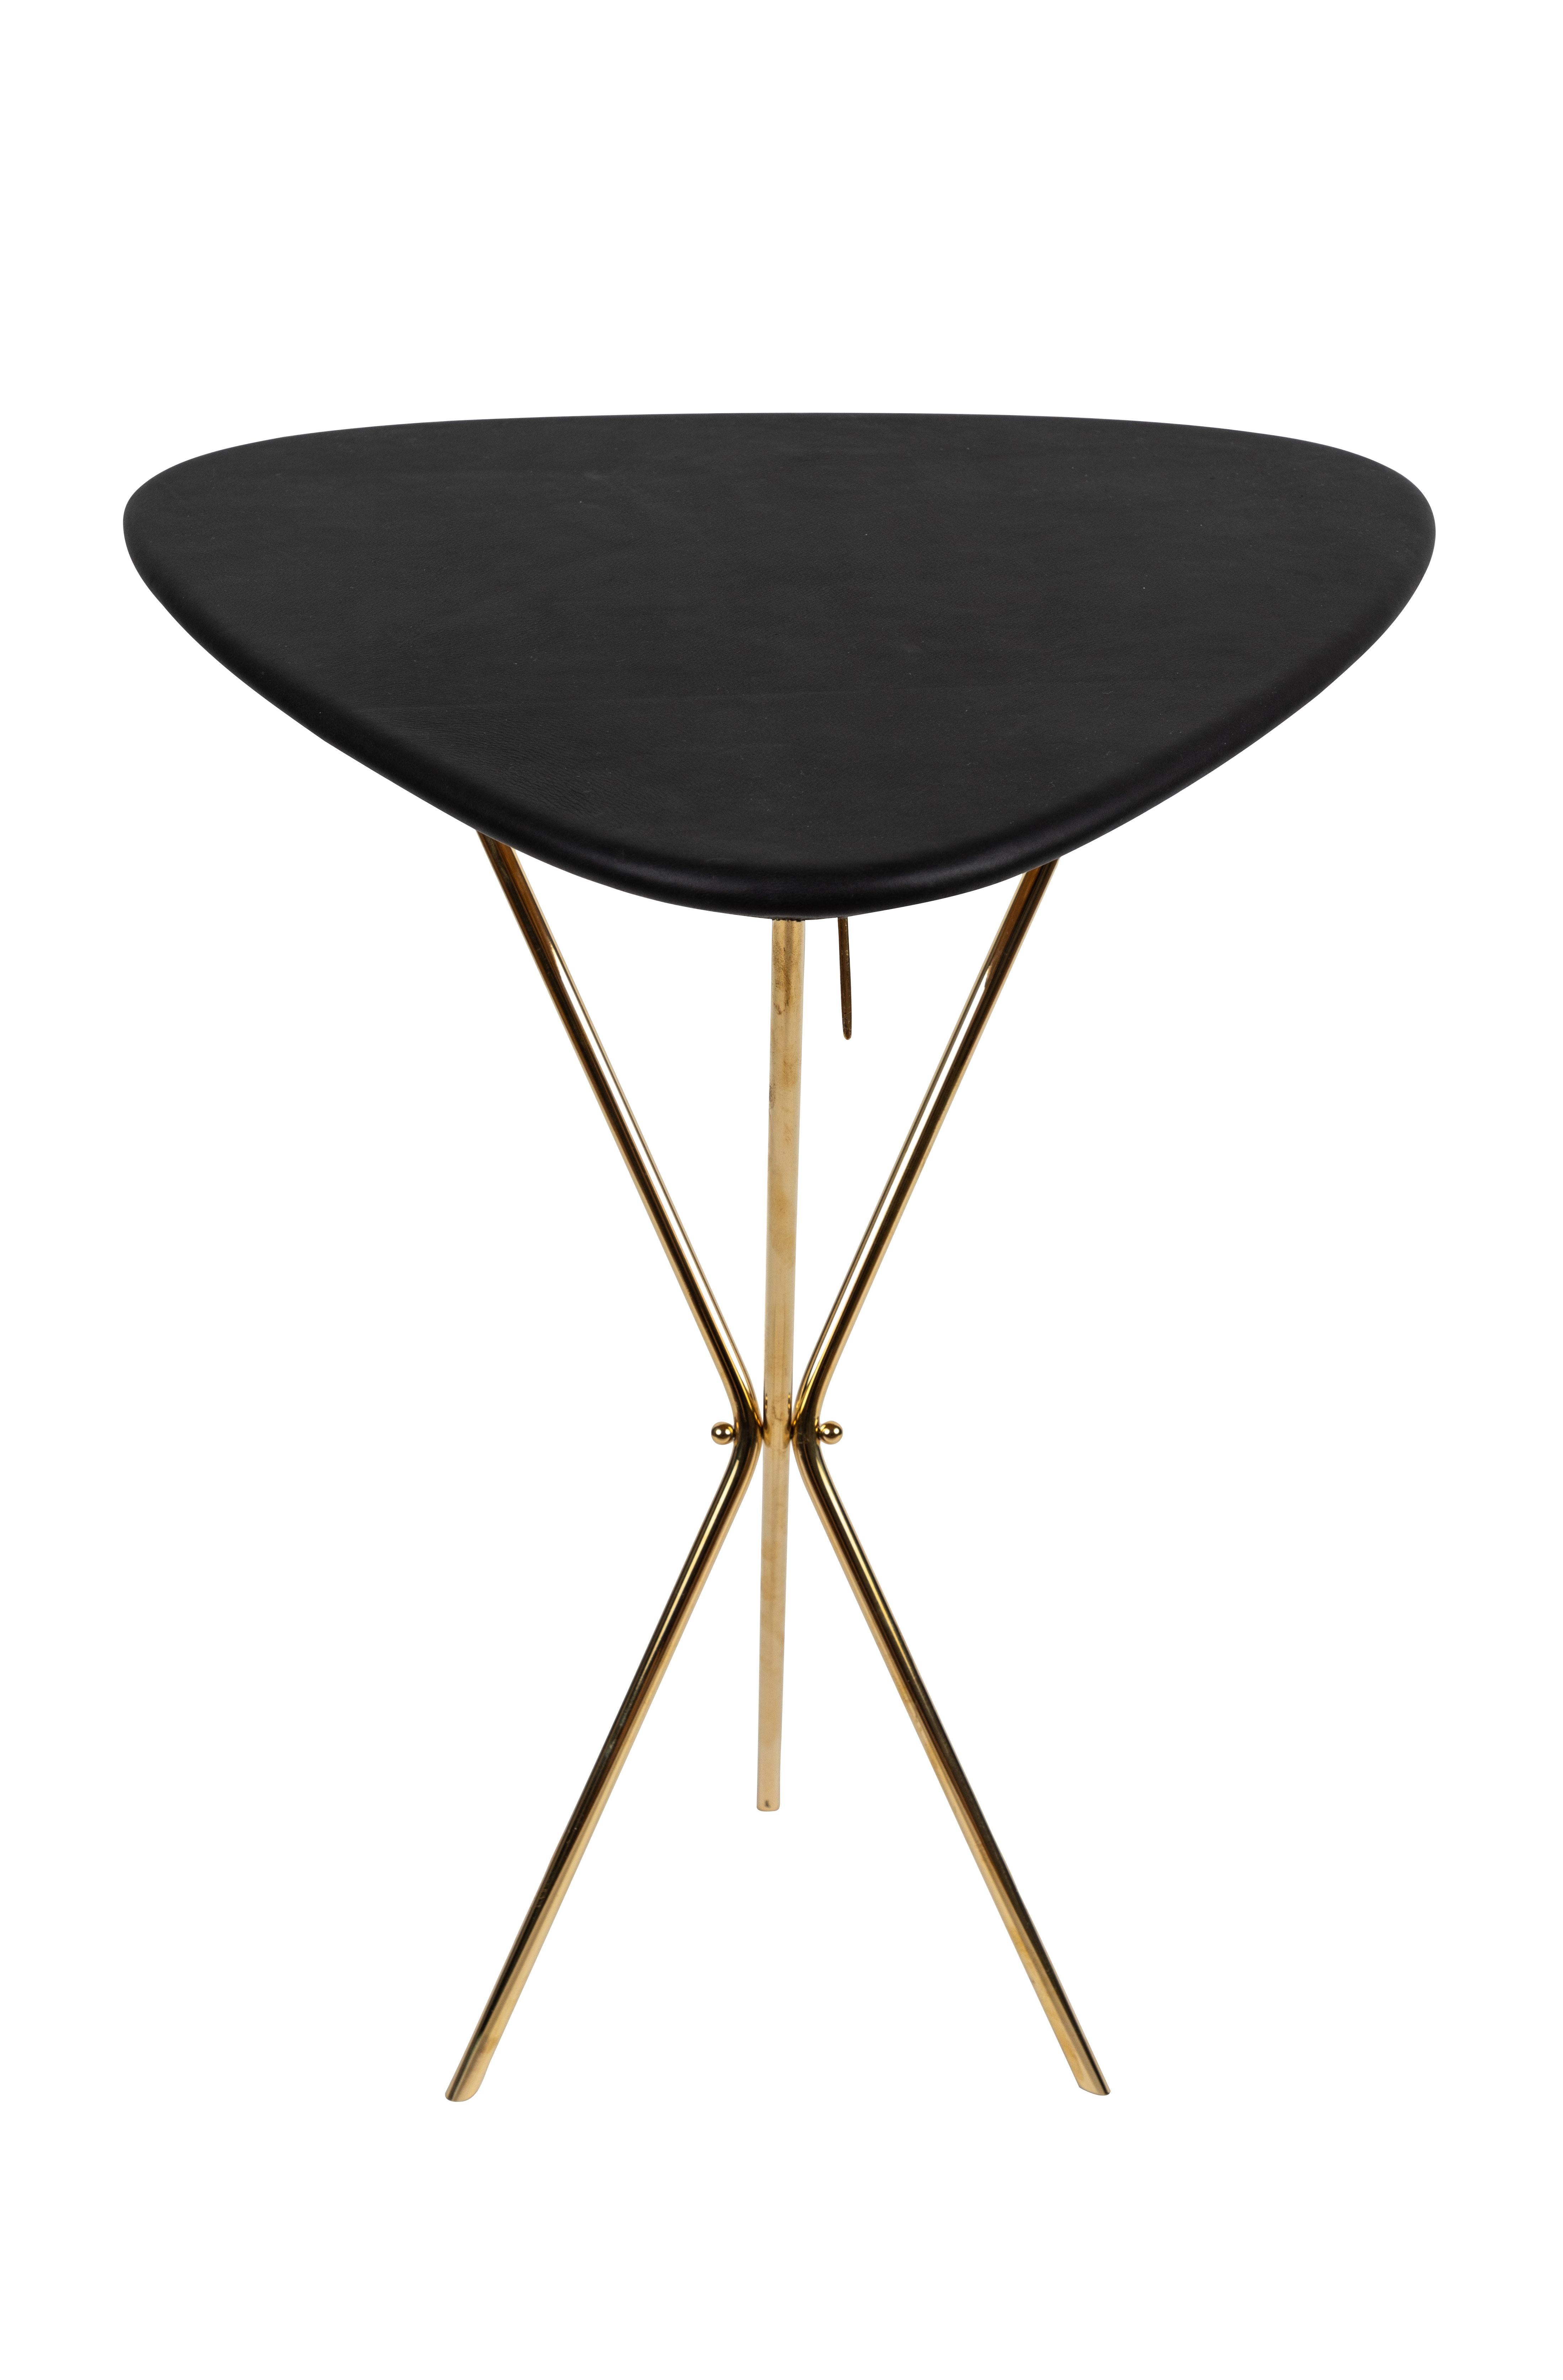 Carl Auböck modèle #3642 table en laiton et cuir conçue dans les années 1950, cette table incroyablement raffinée et sculpturale est exécutée en chêne magnifiquement grainé, en laiton poli et en cuir tapissé à la main. Inspirée des tables à cartes